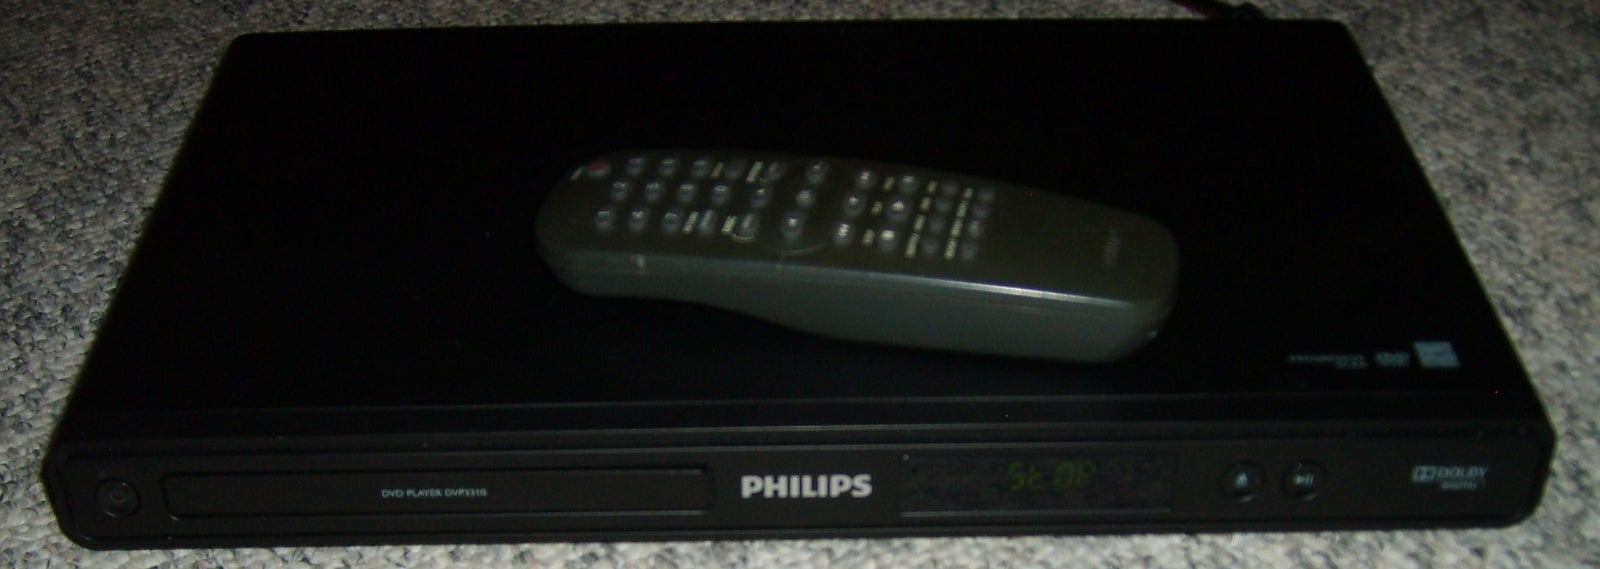 Dvd-afspiller, Philips, DVP3310/12